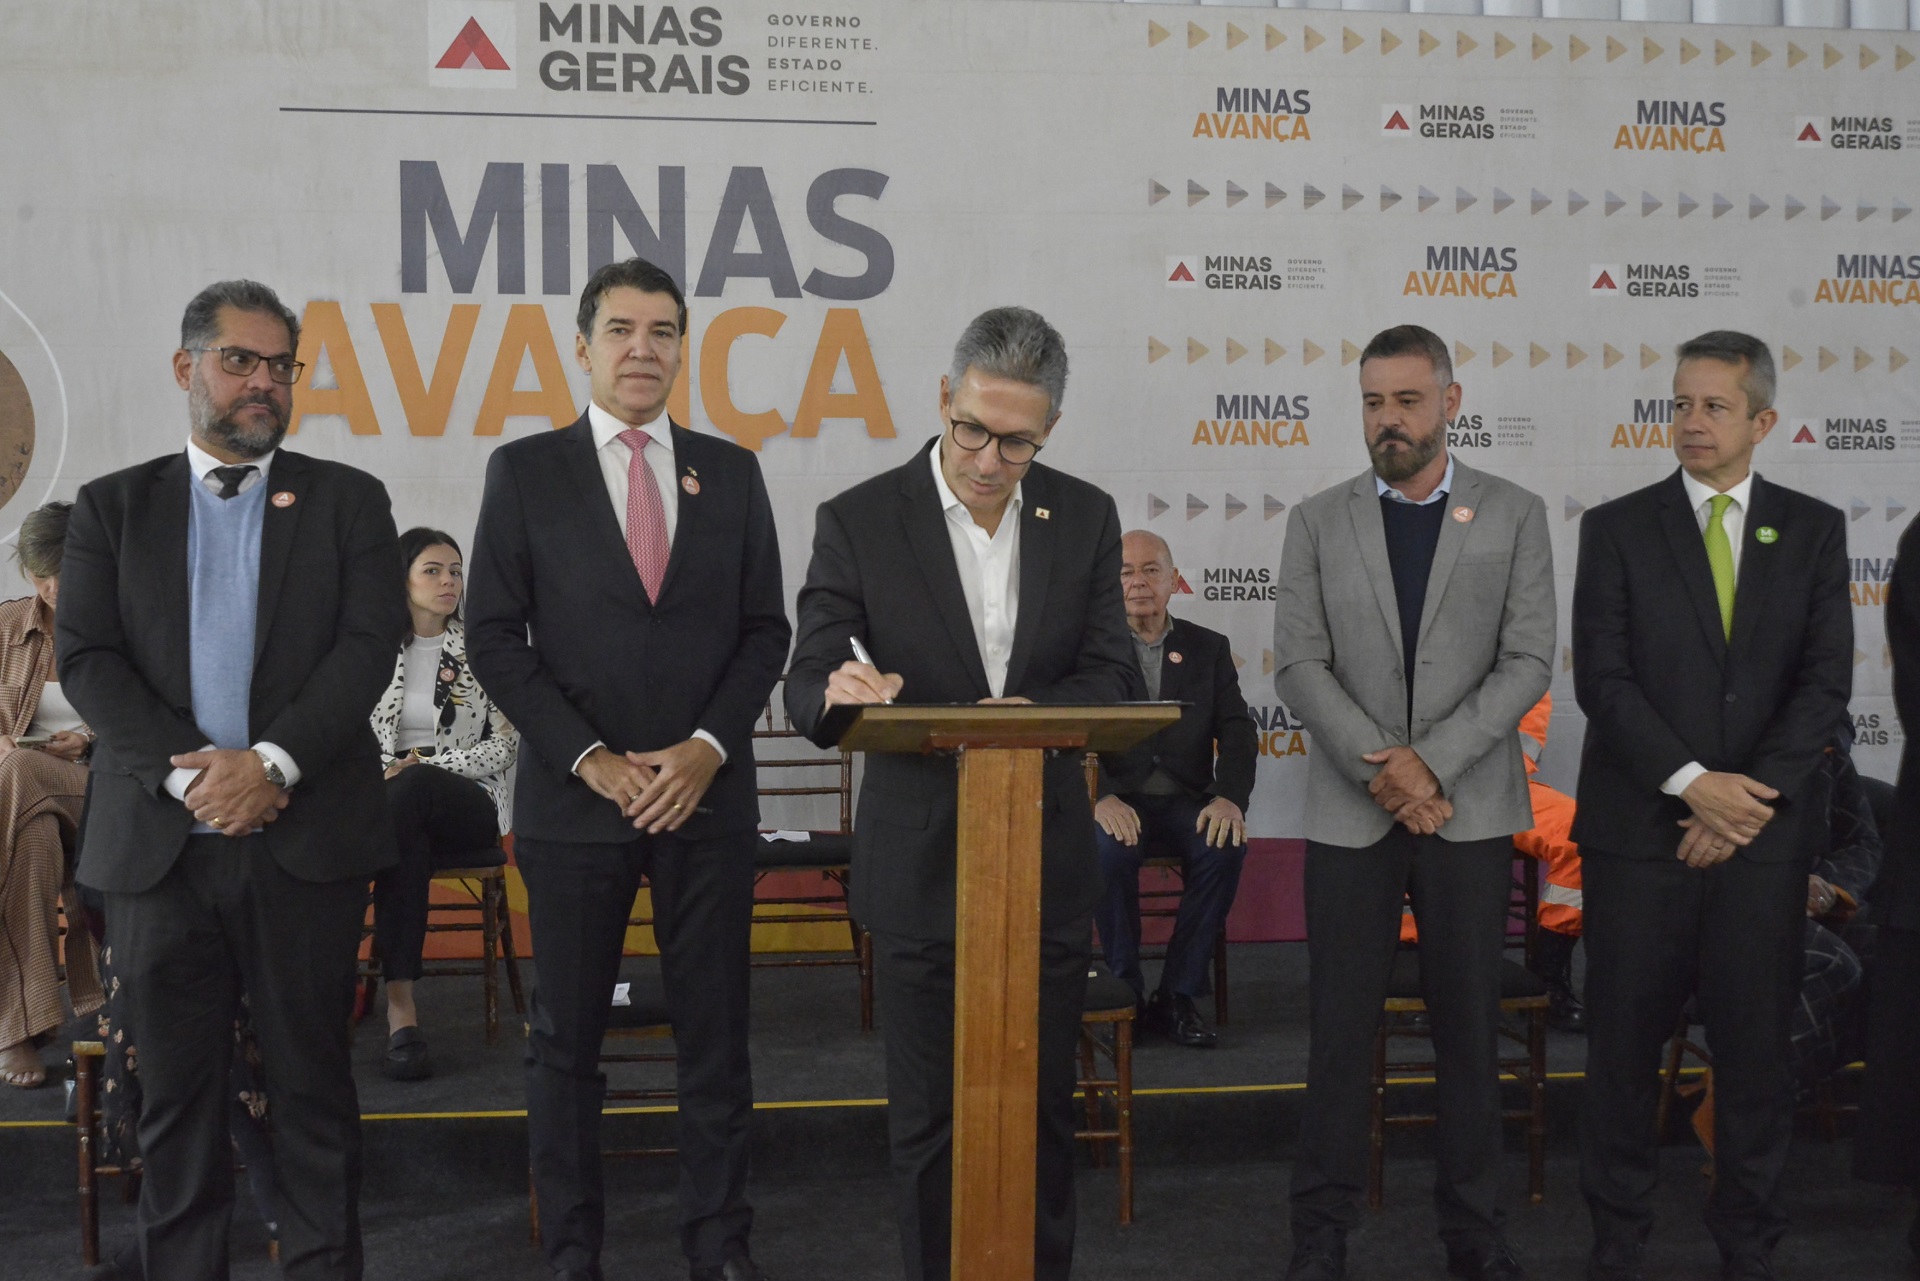 Governo de Minas, Ministério Público e parceiros firmam compromisso para restauração do Palácio da Liberdade